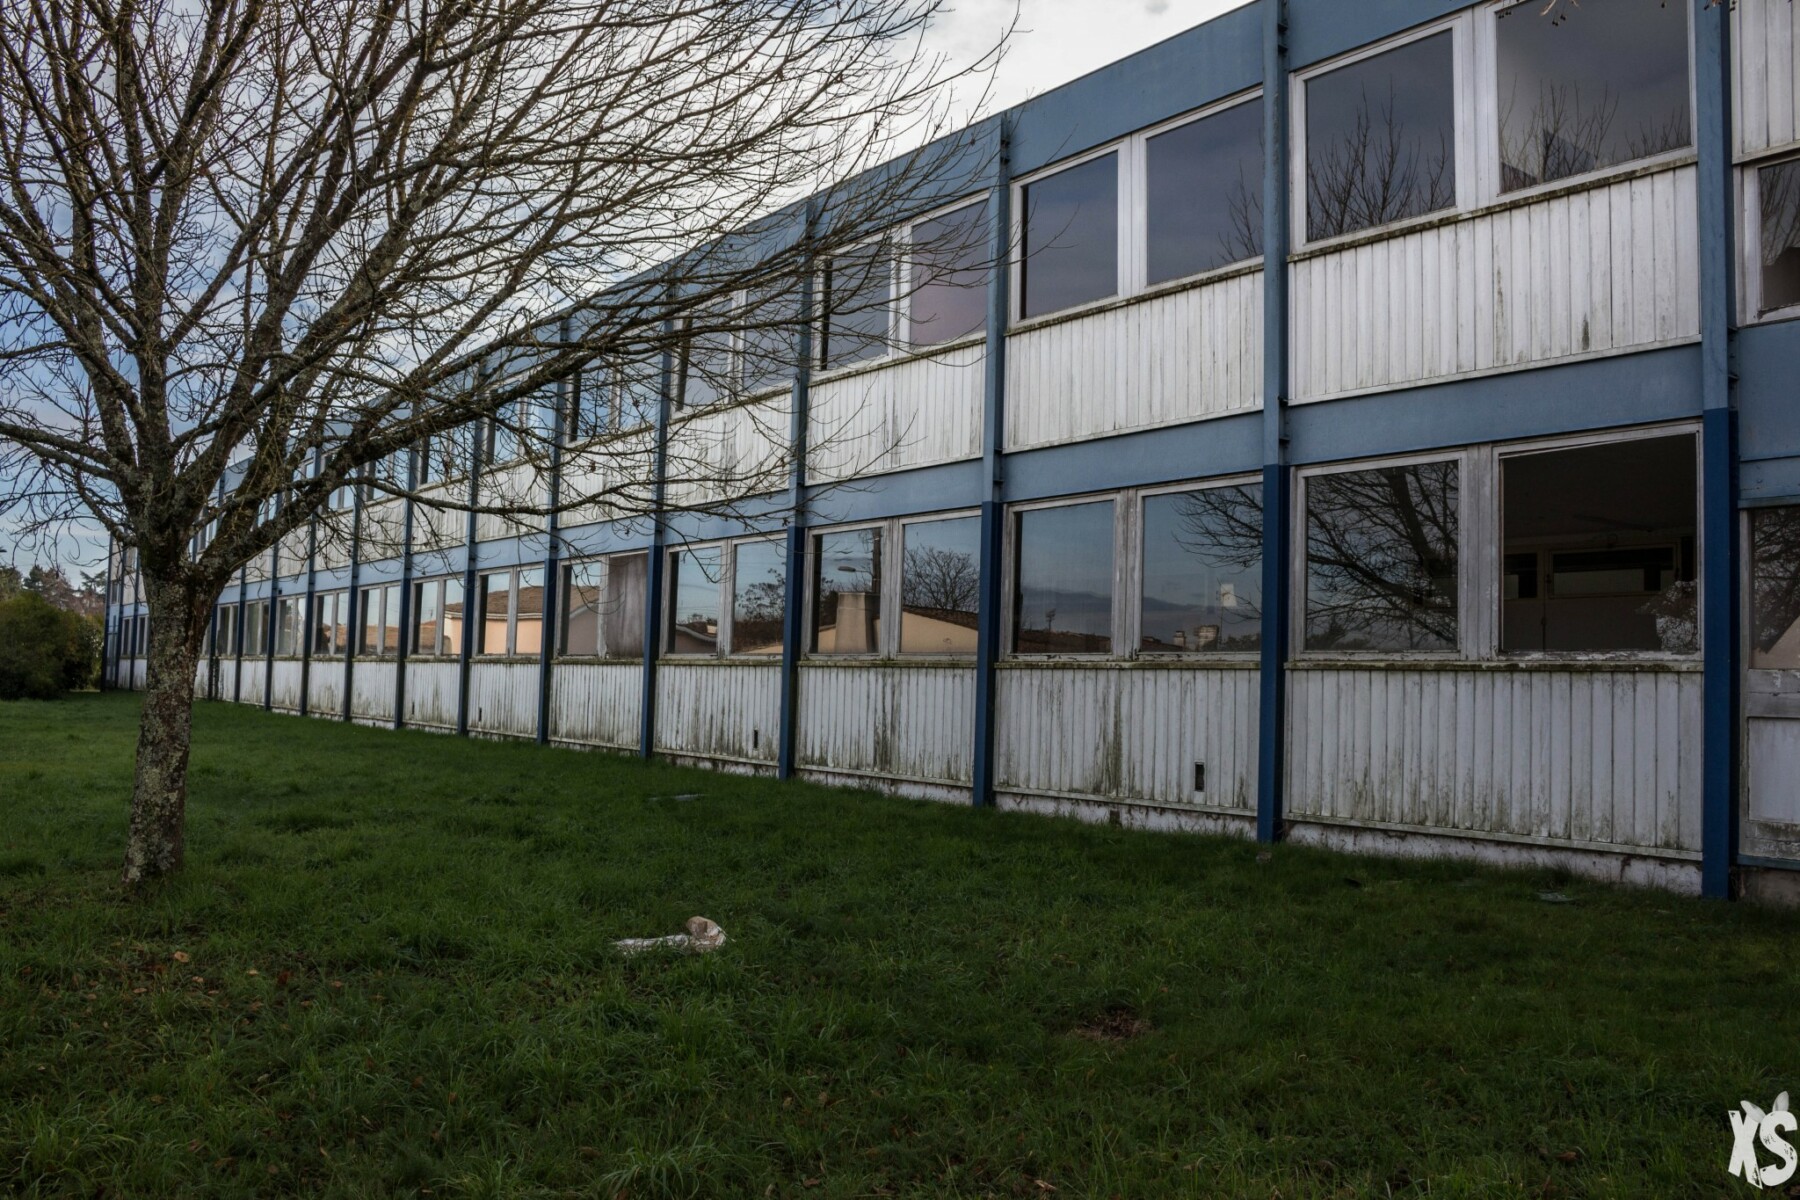 Collège abandonné en Gironde